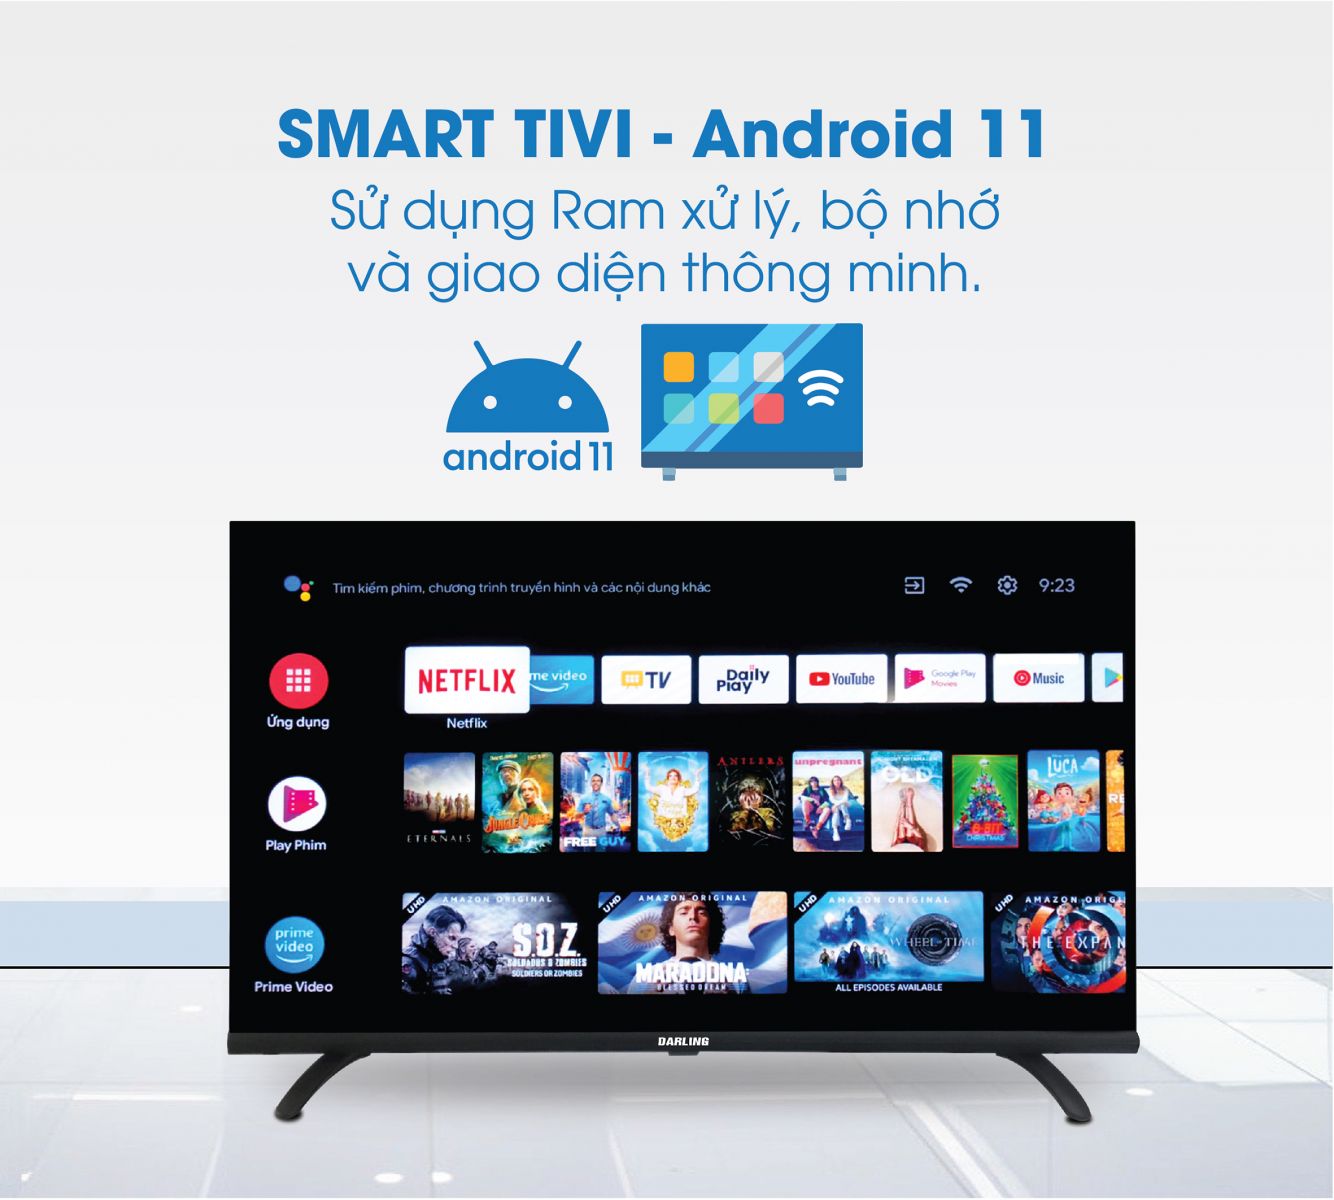 Smart TV Darling sử dụng hệ điều hành Android 11 với giao diện đơn giản, dễ sử dụng